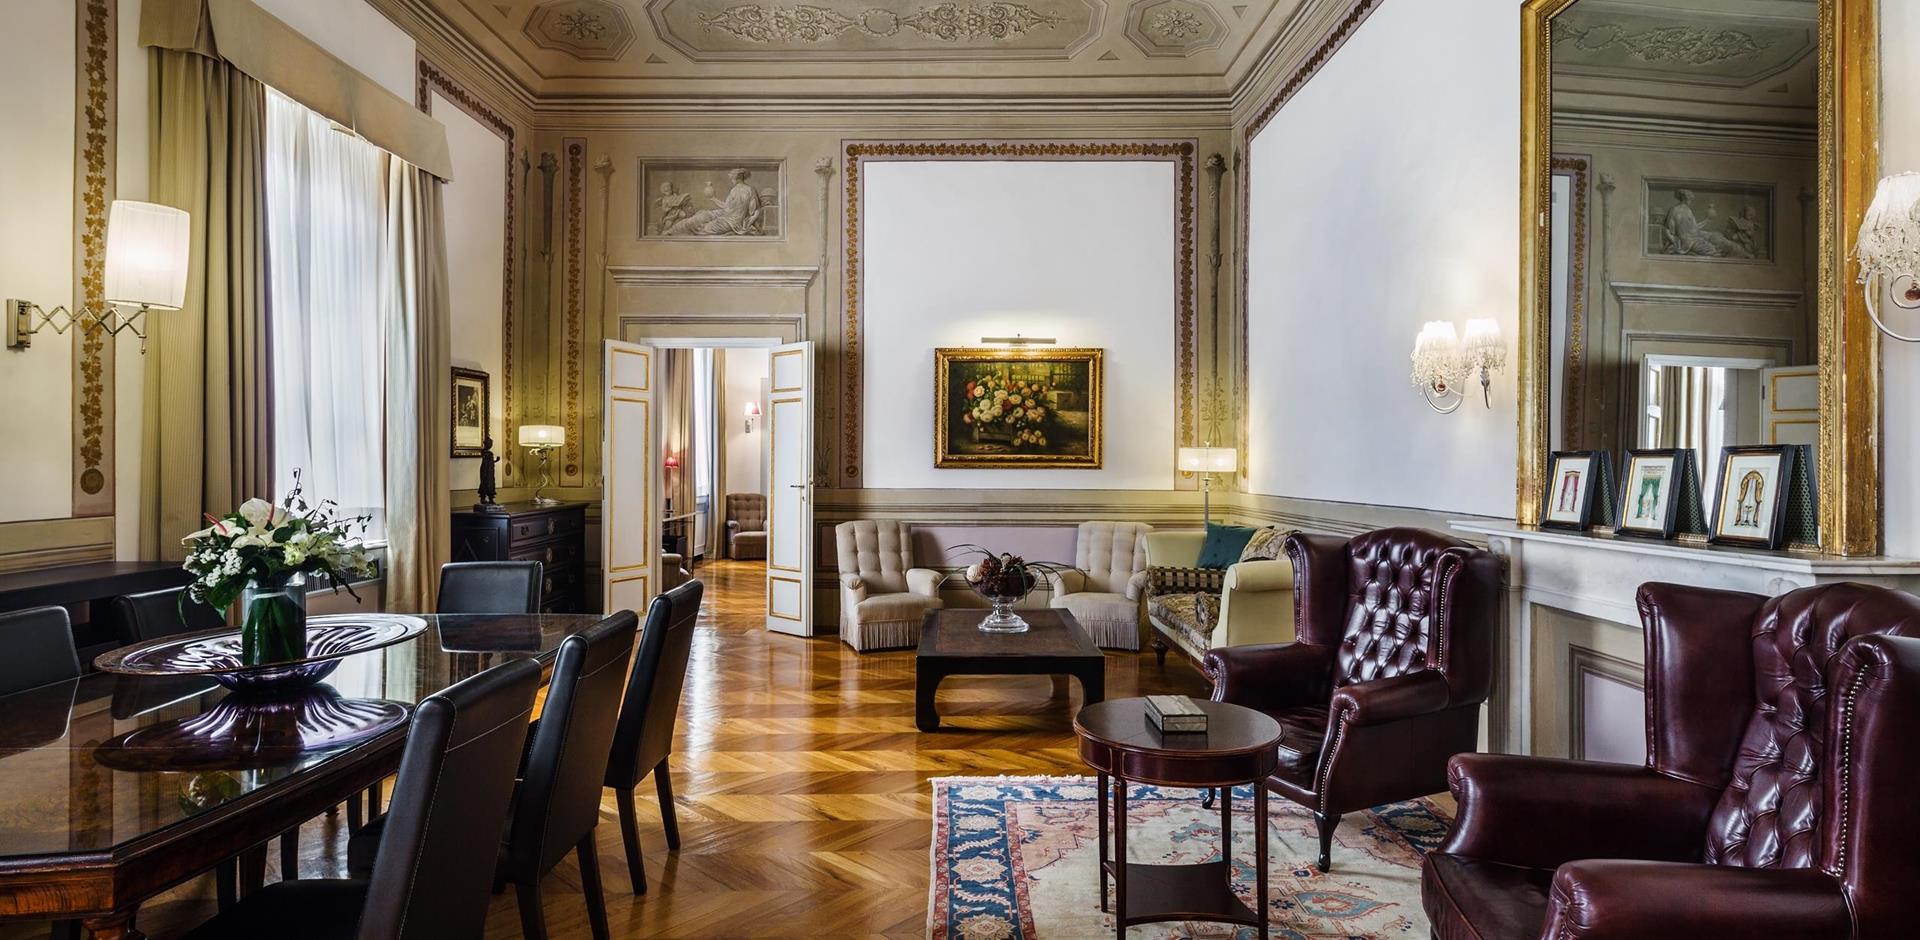 Dining area, The Baldinucci Suite, Florence